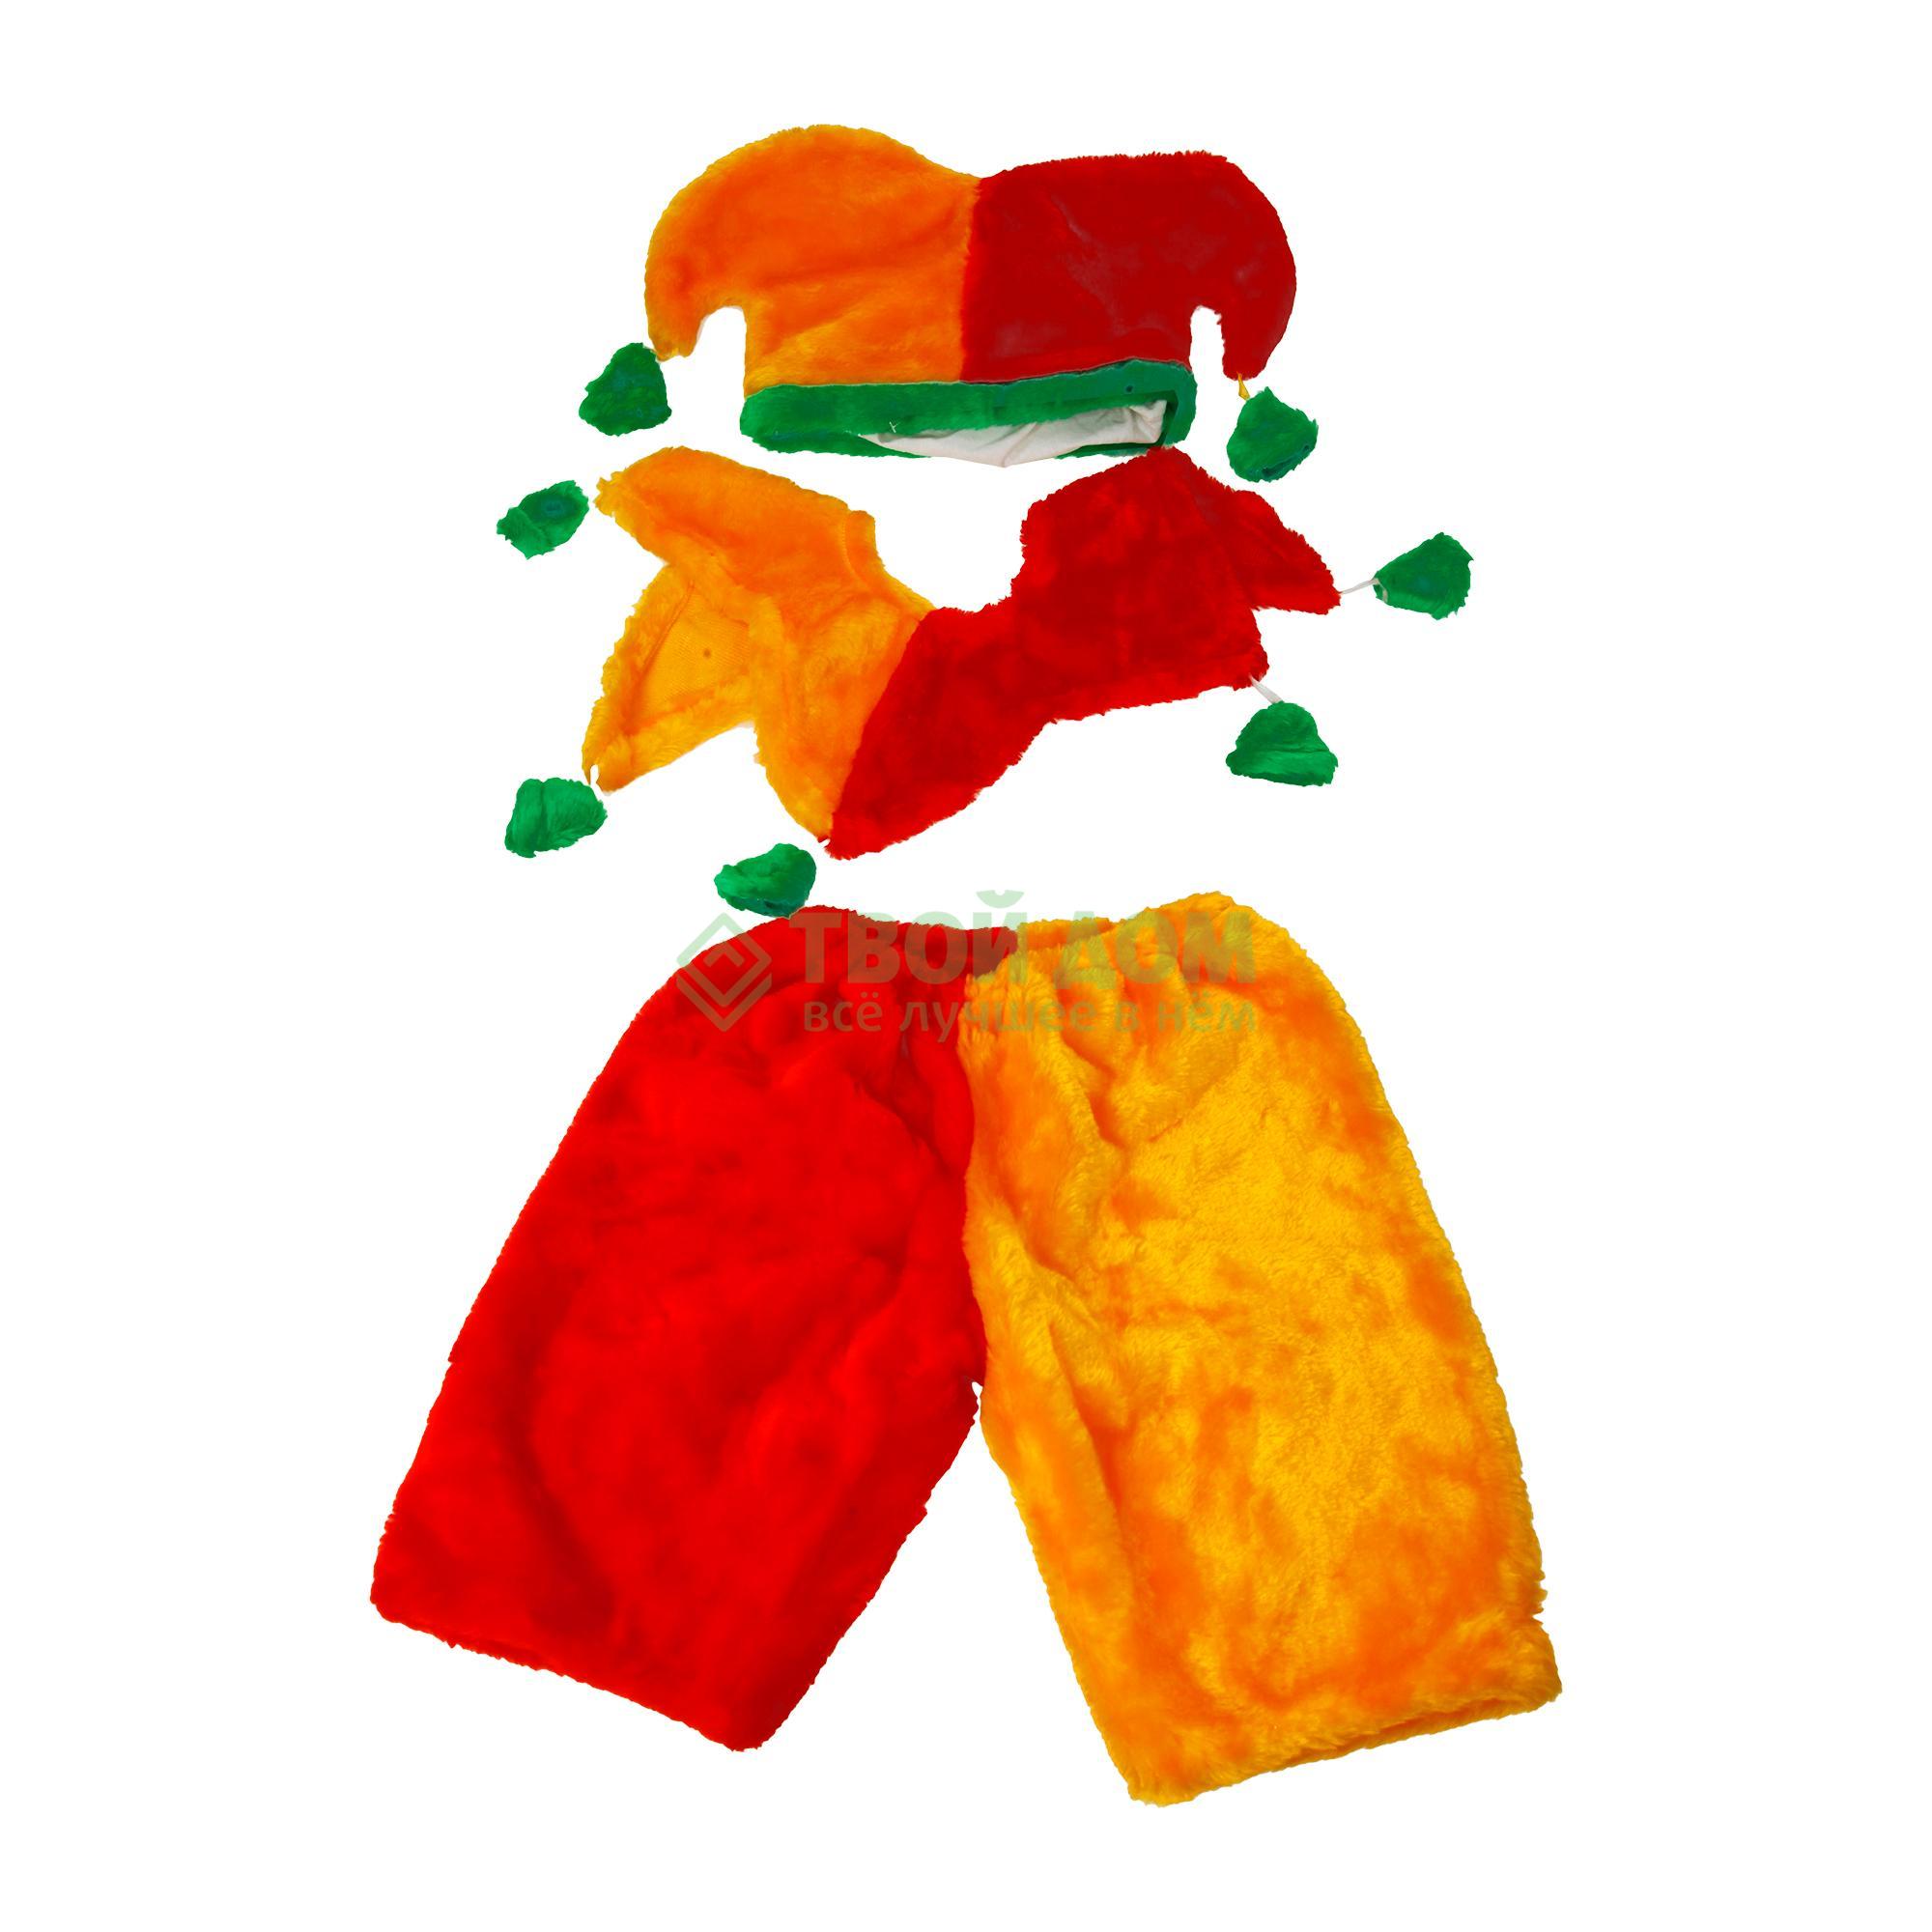 Артэ-Грим Карнавальный костюм петрушка артэ грим карнавальный костюм жар птица